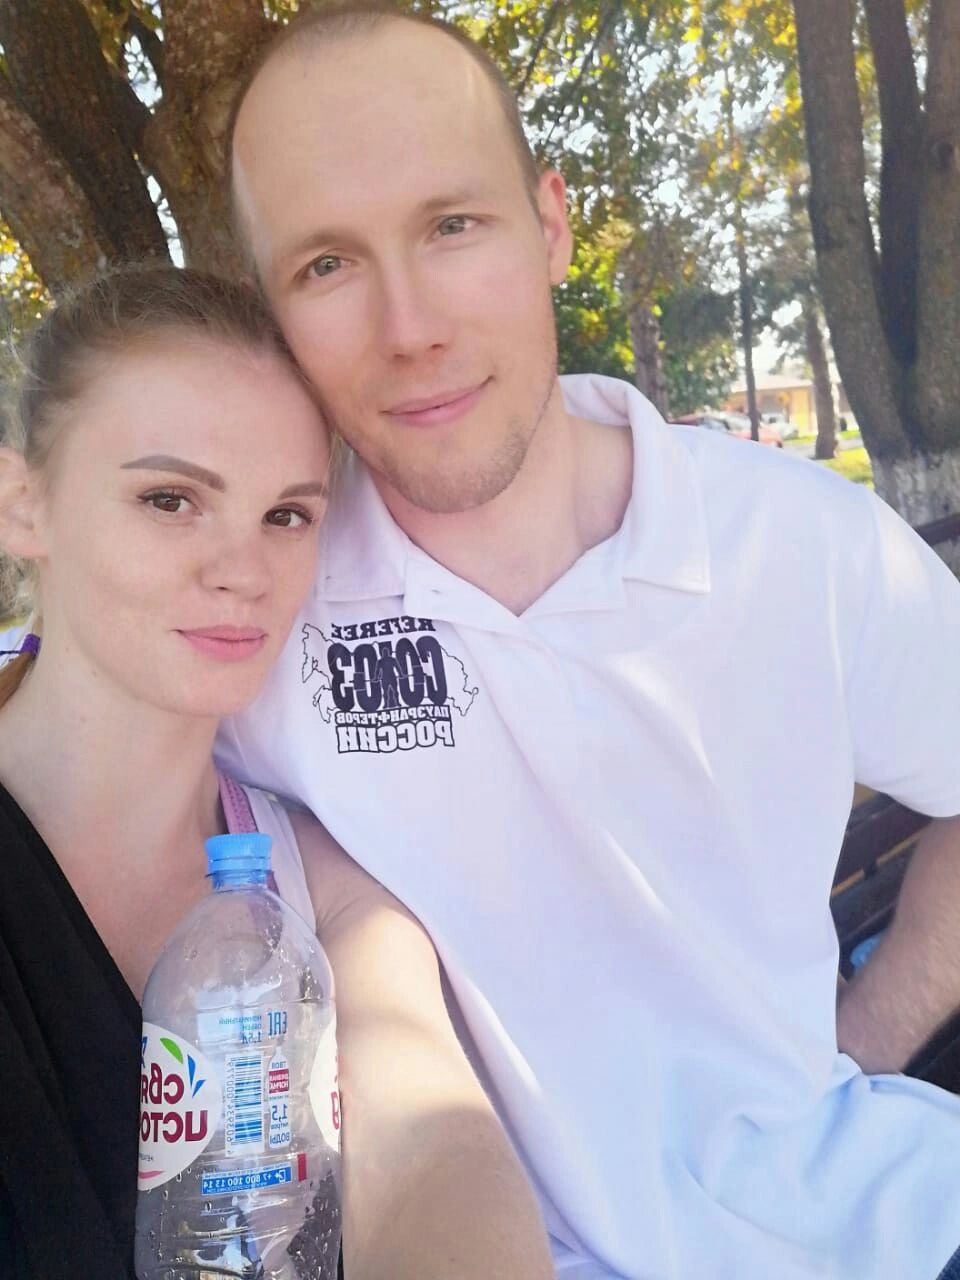 Алексей Абрамов со своей супругой Ксенией. У мужчины несколько грыж позвоночника, он живет на обезболивающих